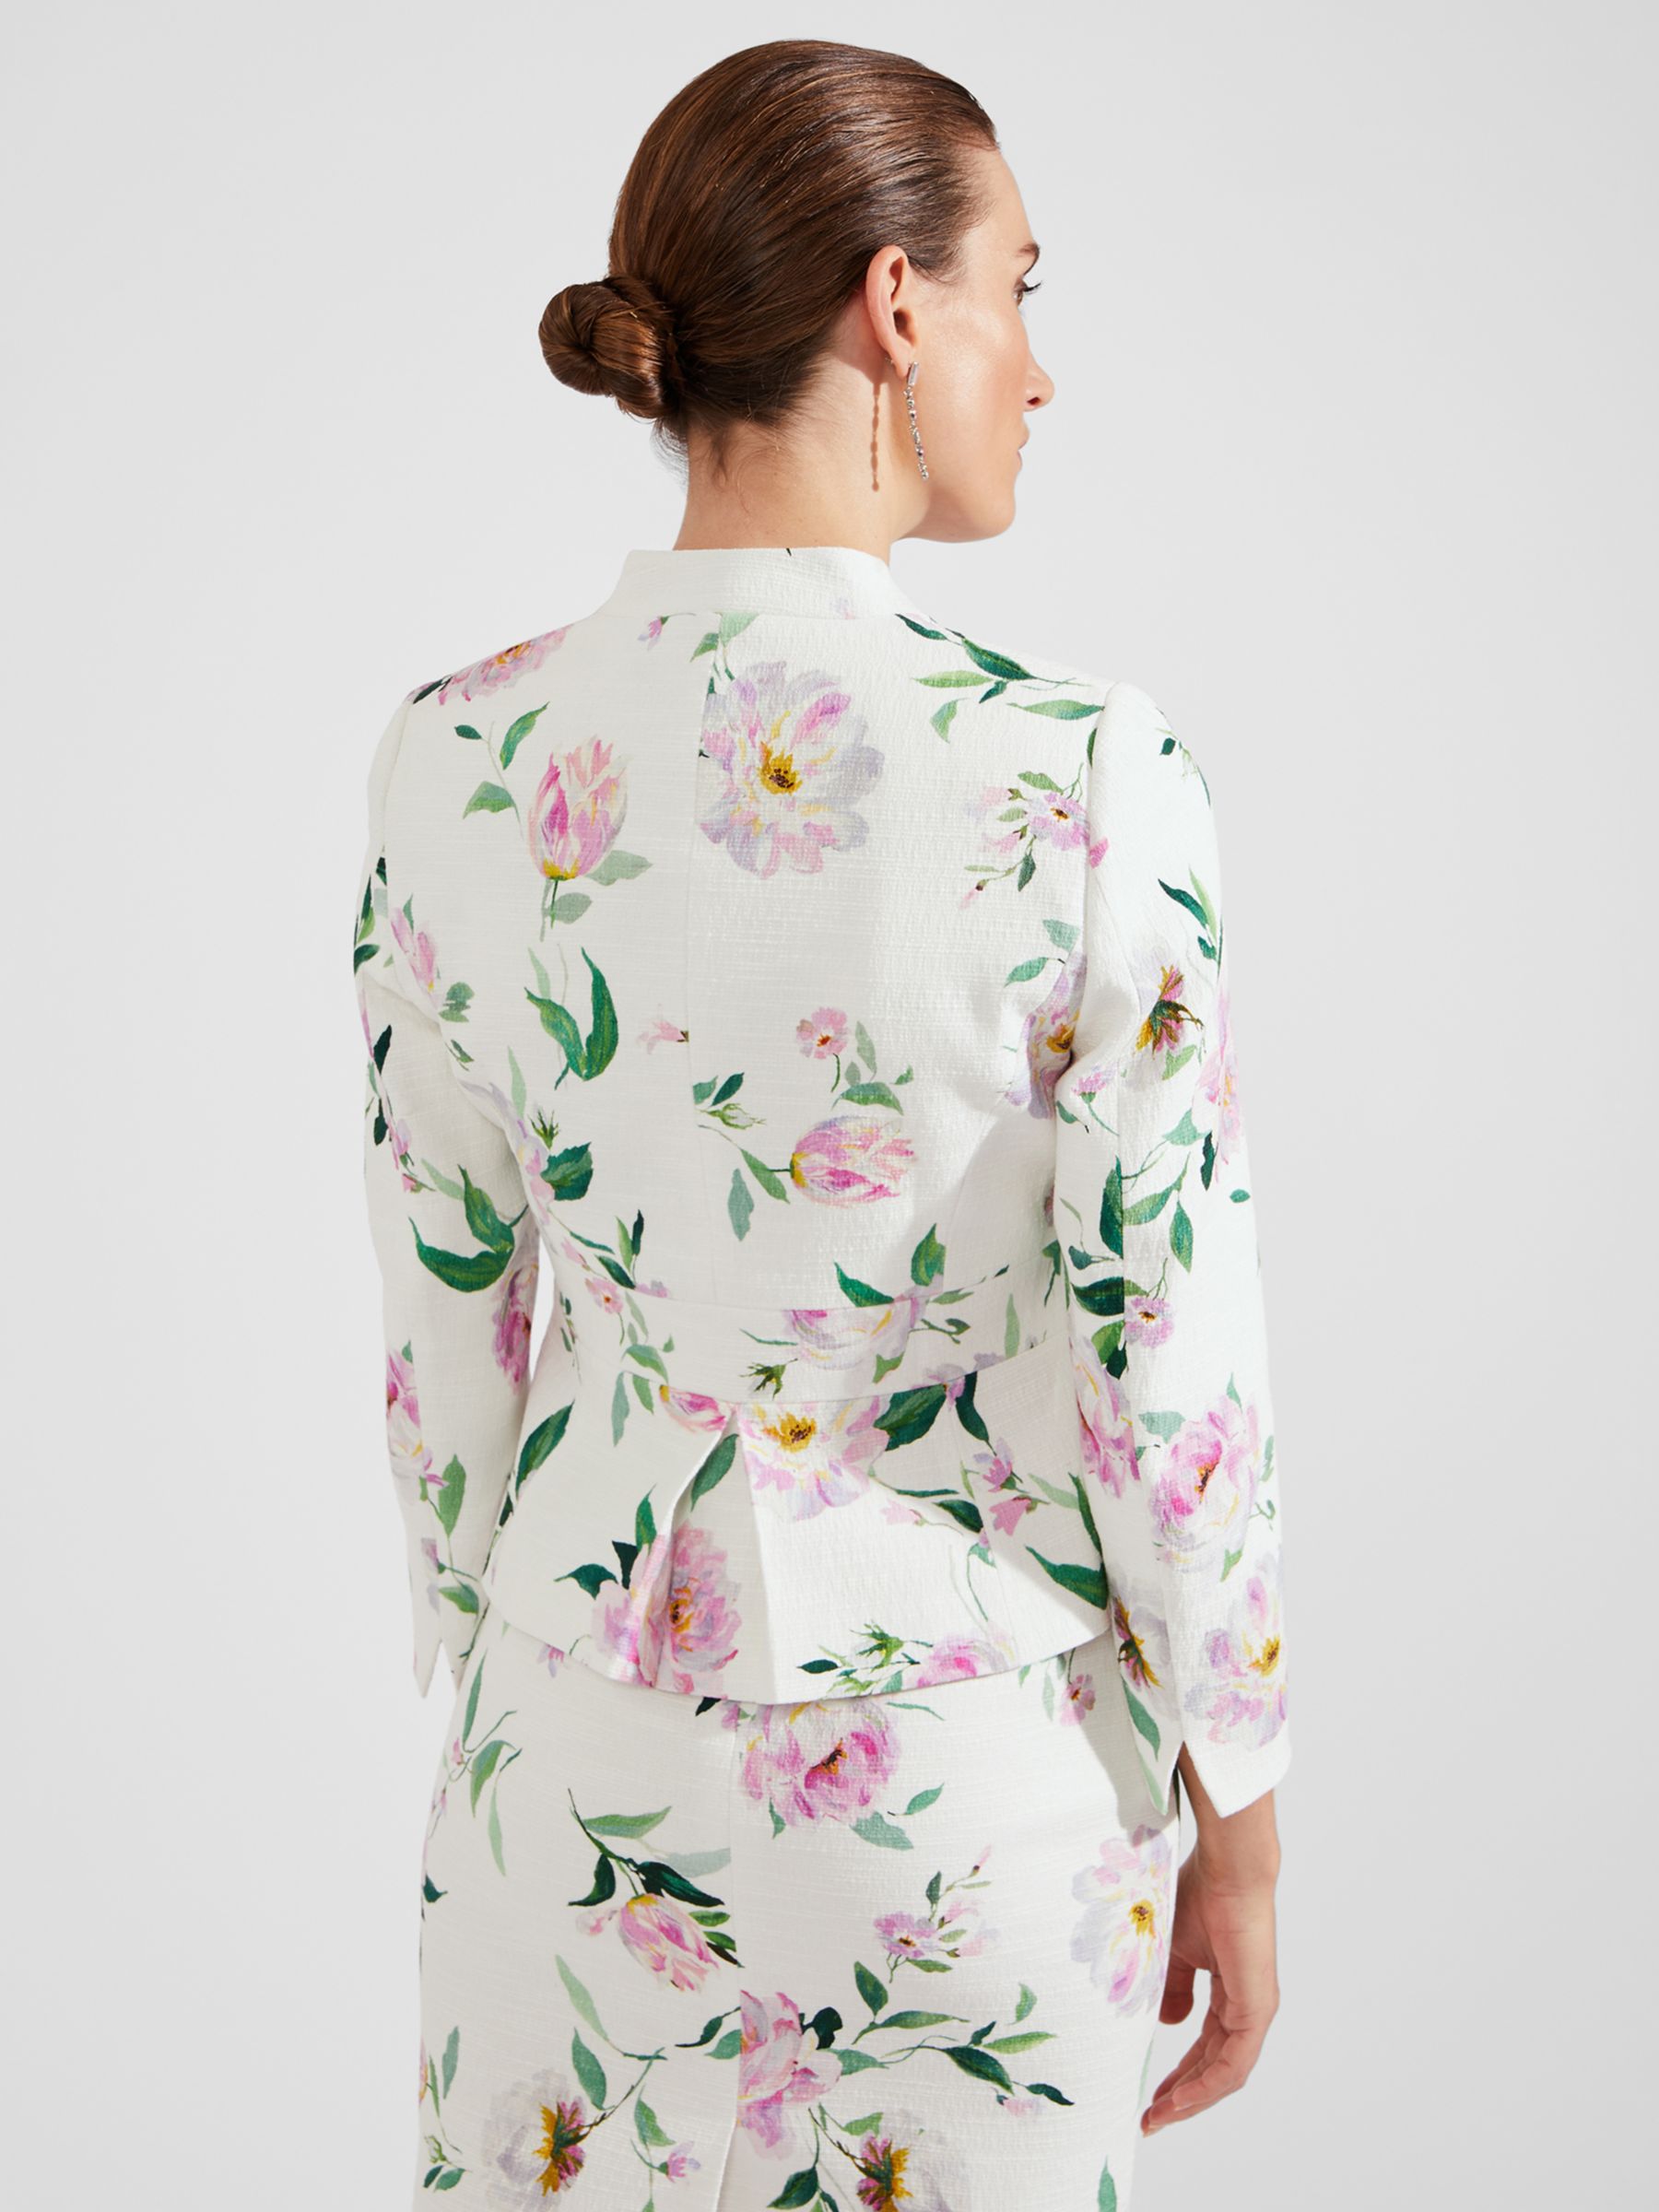 Hobbs Petite Suzanna Floral Print Jacket, Ivory/Multi, 18